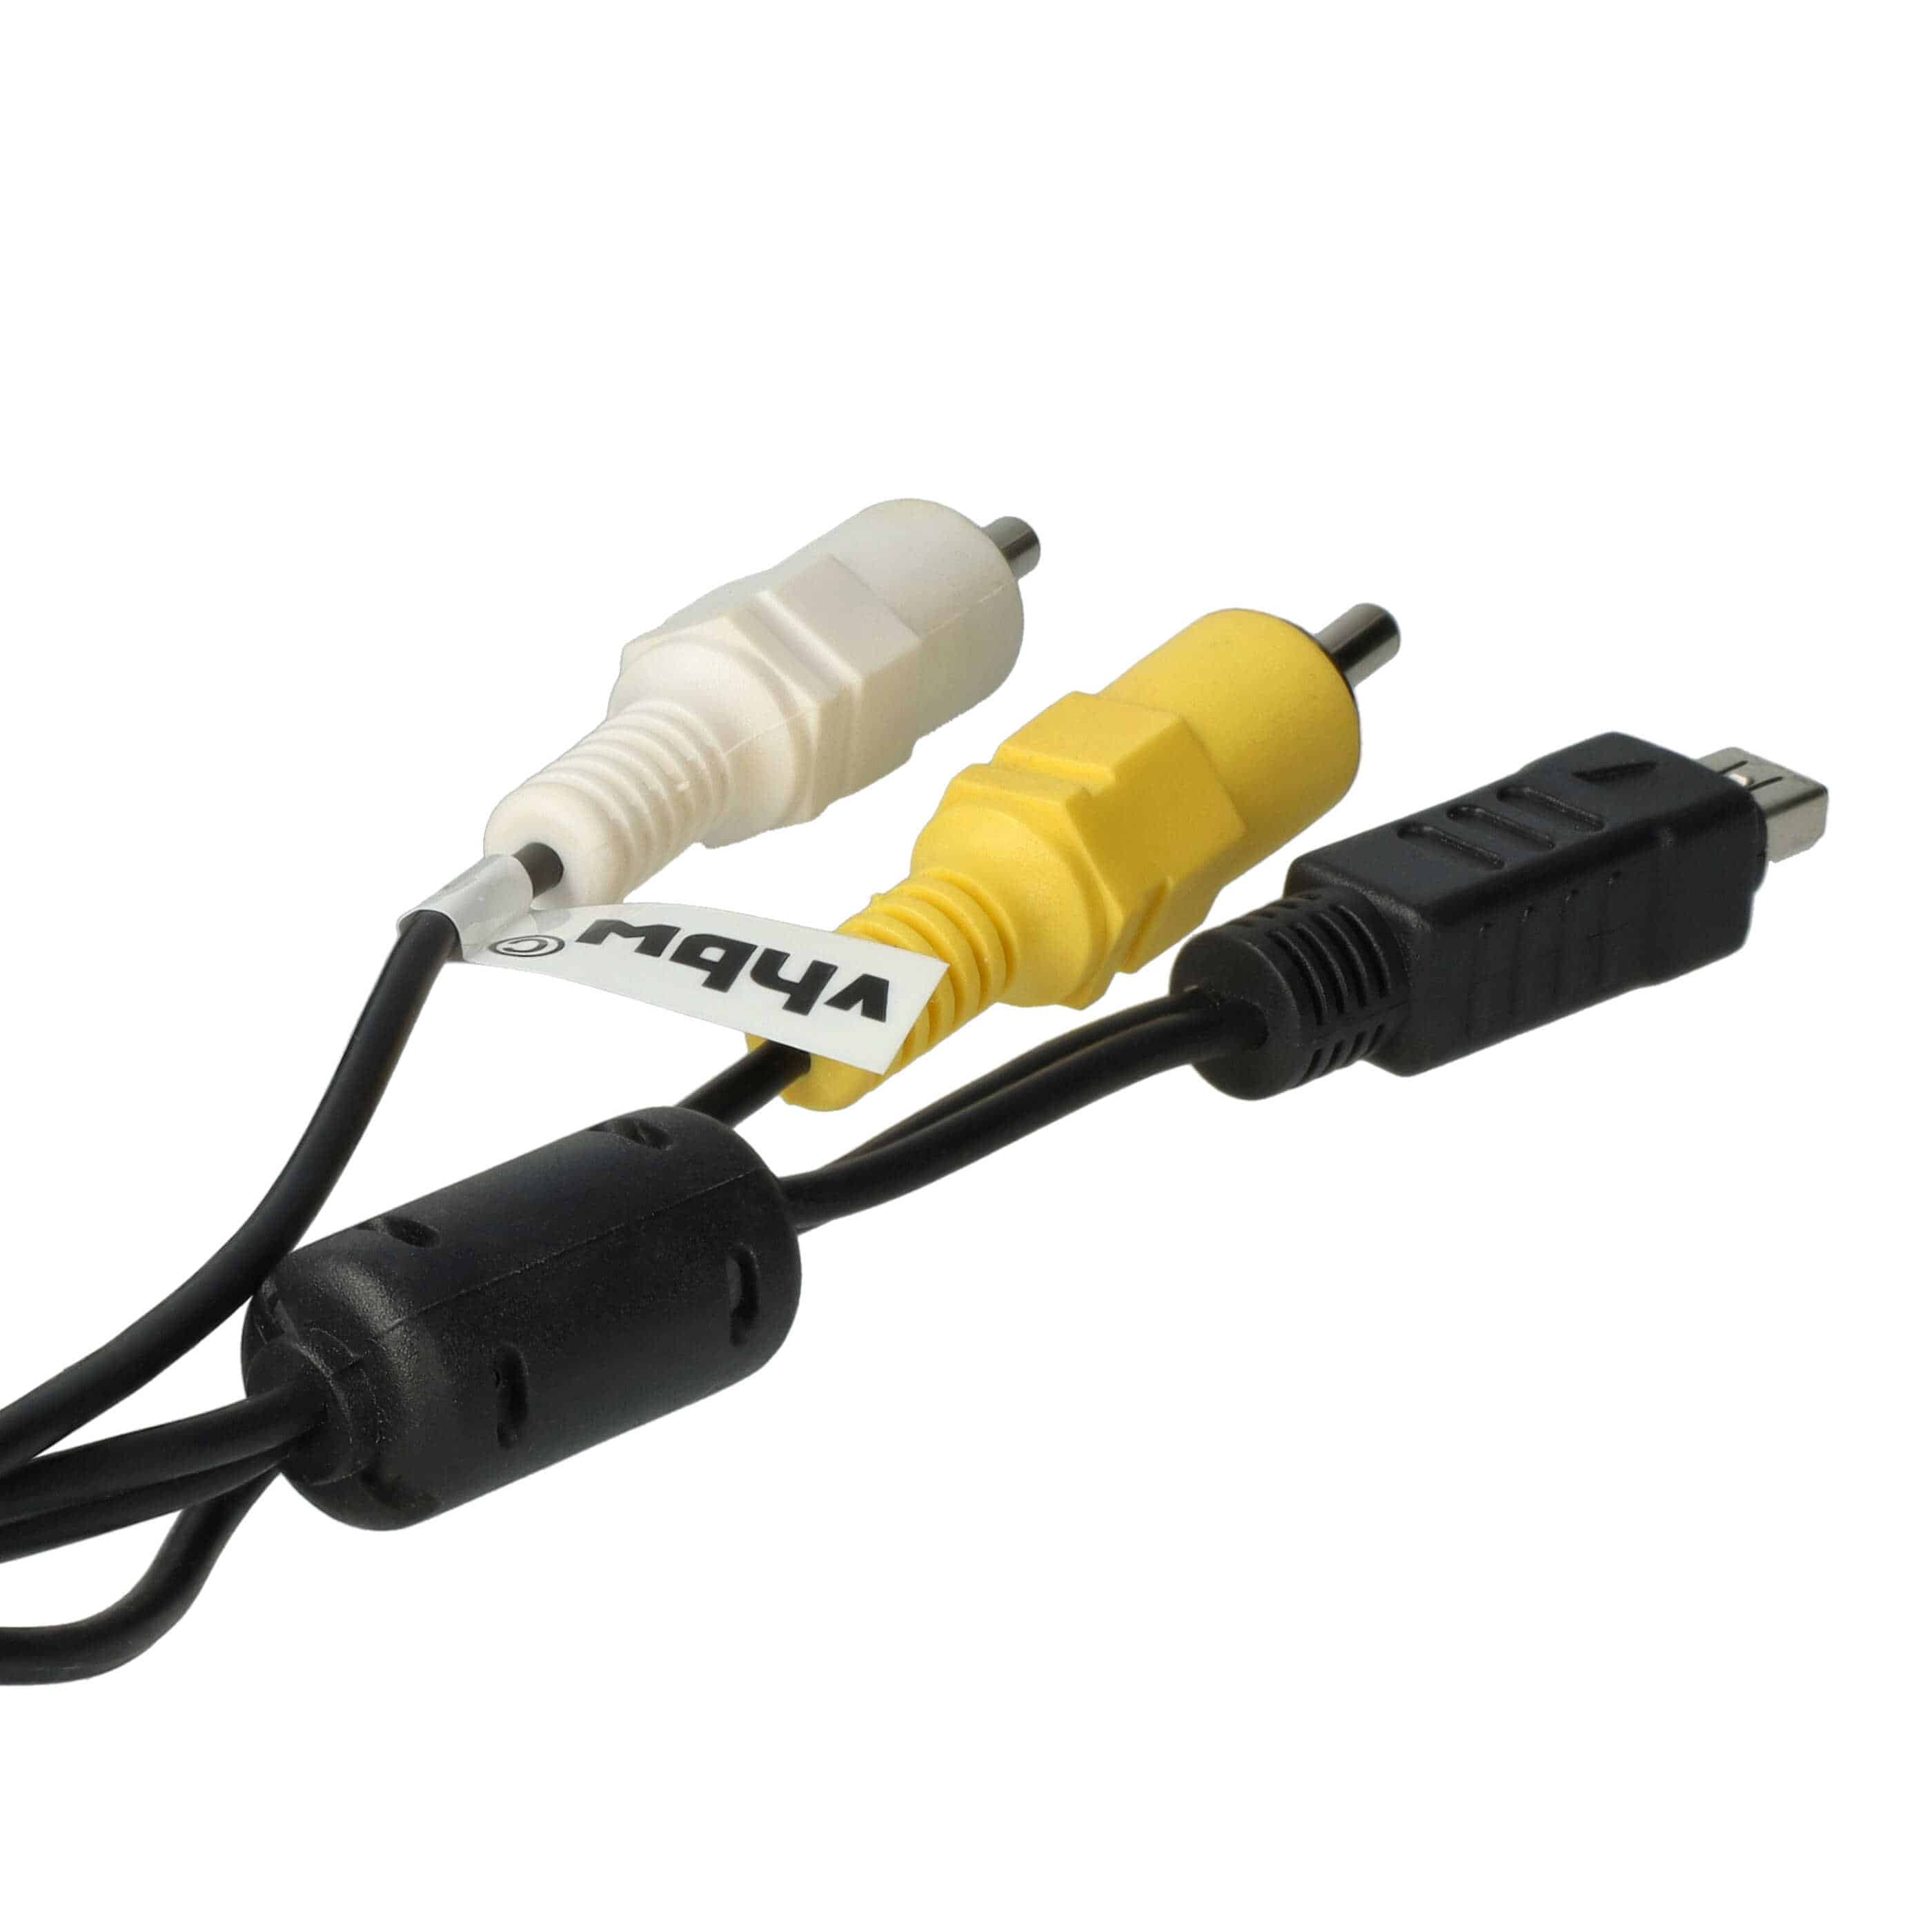 vhbw Cable audio vídeo compuesto compatible con Olympus C-170 cámara, cámara digital - Cable AV